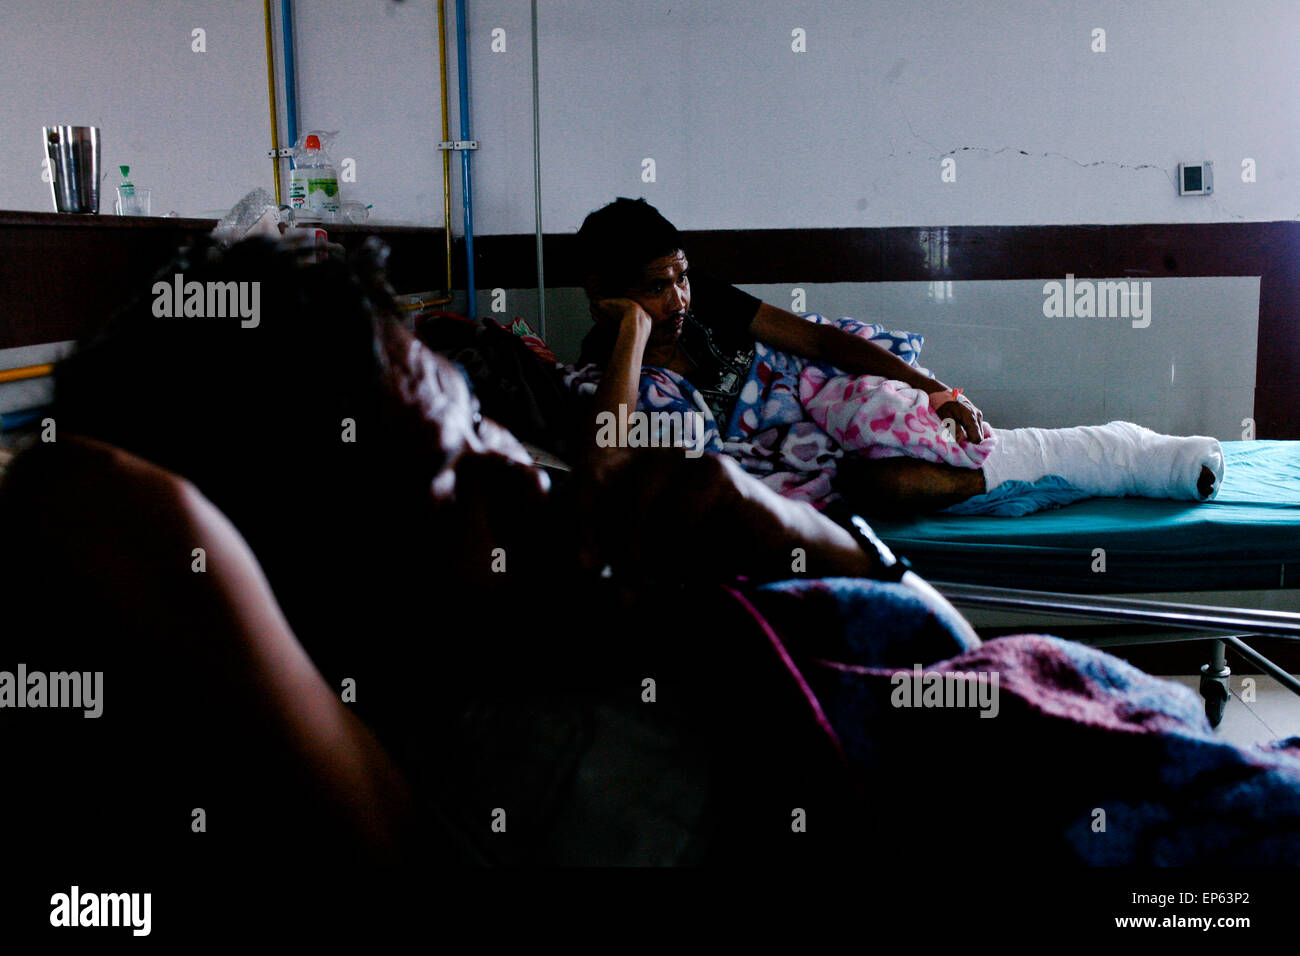 Eine verletzte nepalesische Überlebende schlafen im Krankenhaus in Kathmandu. Ein massives Erdbeben der Stärke 7.4 getroffen Nepals Hauptstadt Kathmandu am Dienstag, Auslösung von starken Erschütterungen, die in Delhi und anderen Teilen von Nordindien zu spüren waren. (Foto von Khairil Safwan / Pacific Press) Stockfoto